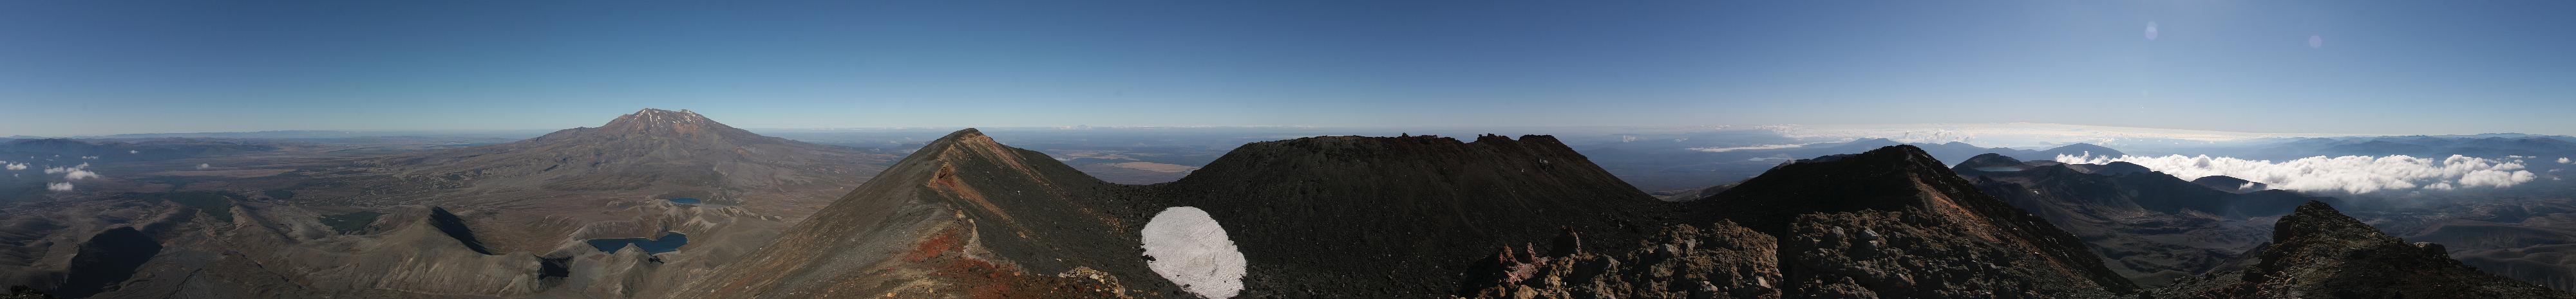 360-Grad-Panorama vom Gipfel des Ngaurohoe. Im Vordergrund kann man den Krater und ein kleines, verbleibendes Schneefeld erkennen